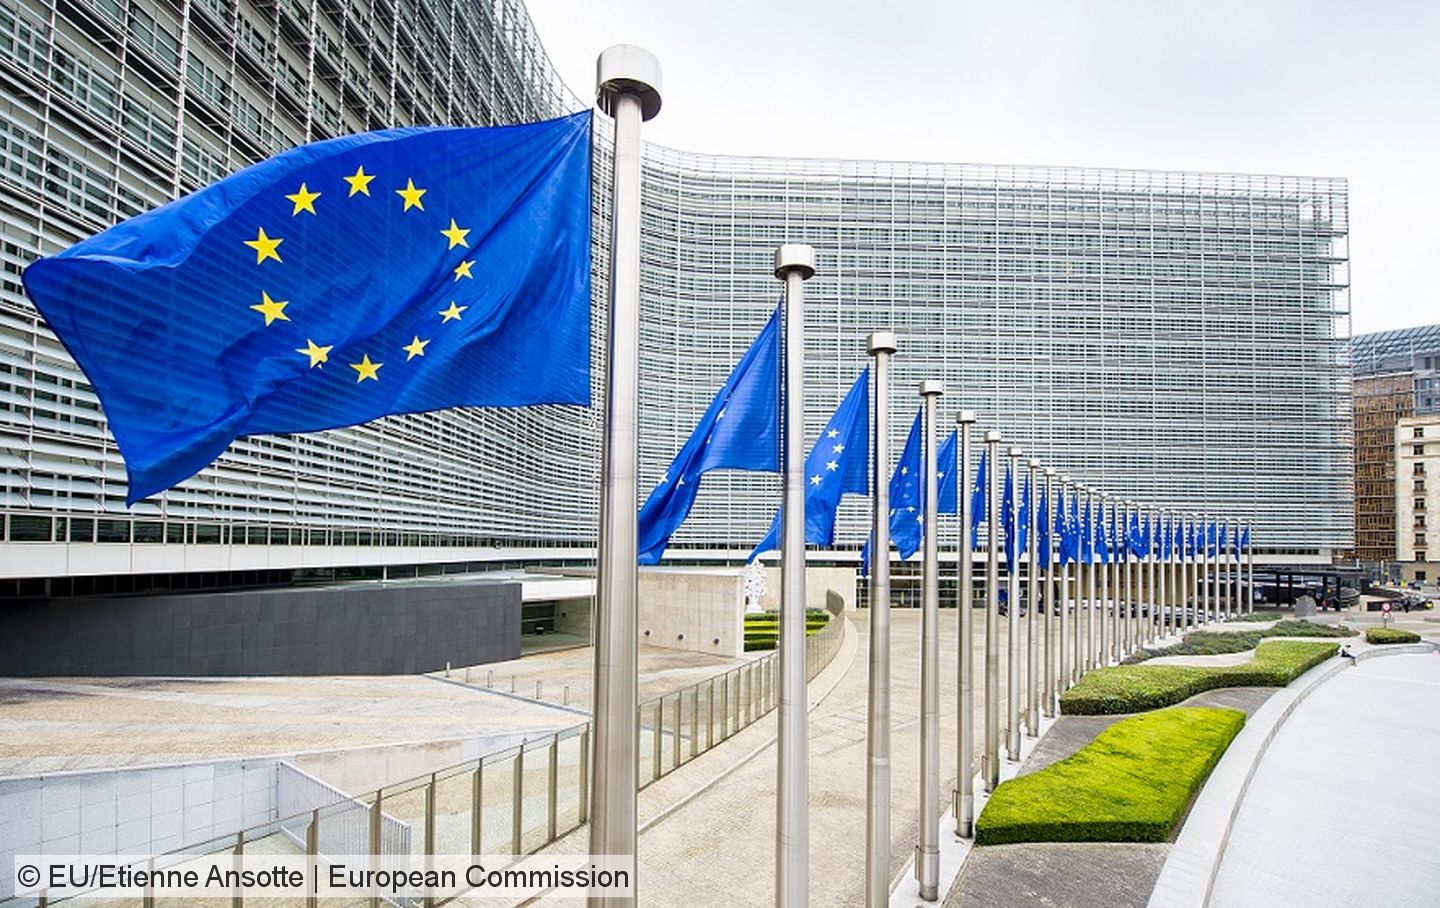 Foto des Gebäudes der EU-Kommission in Brüssel mit einer Reihe von Fahnenmasten mit der EU-Flagge im Vordergrund.